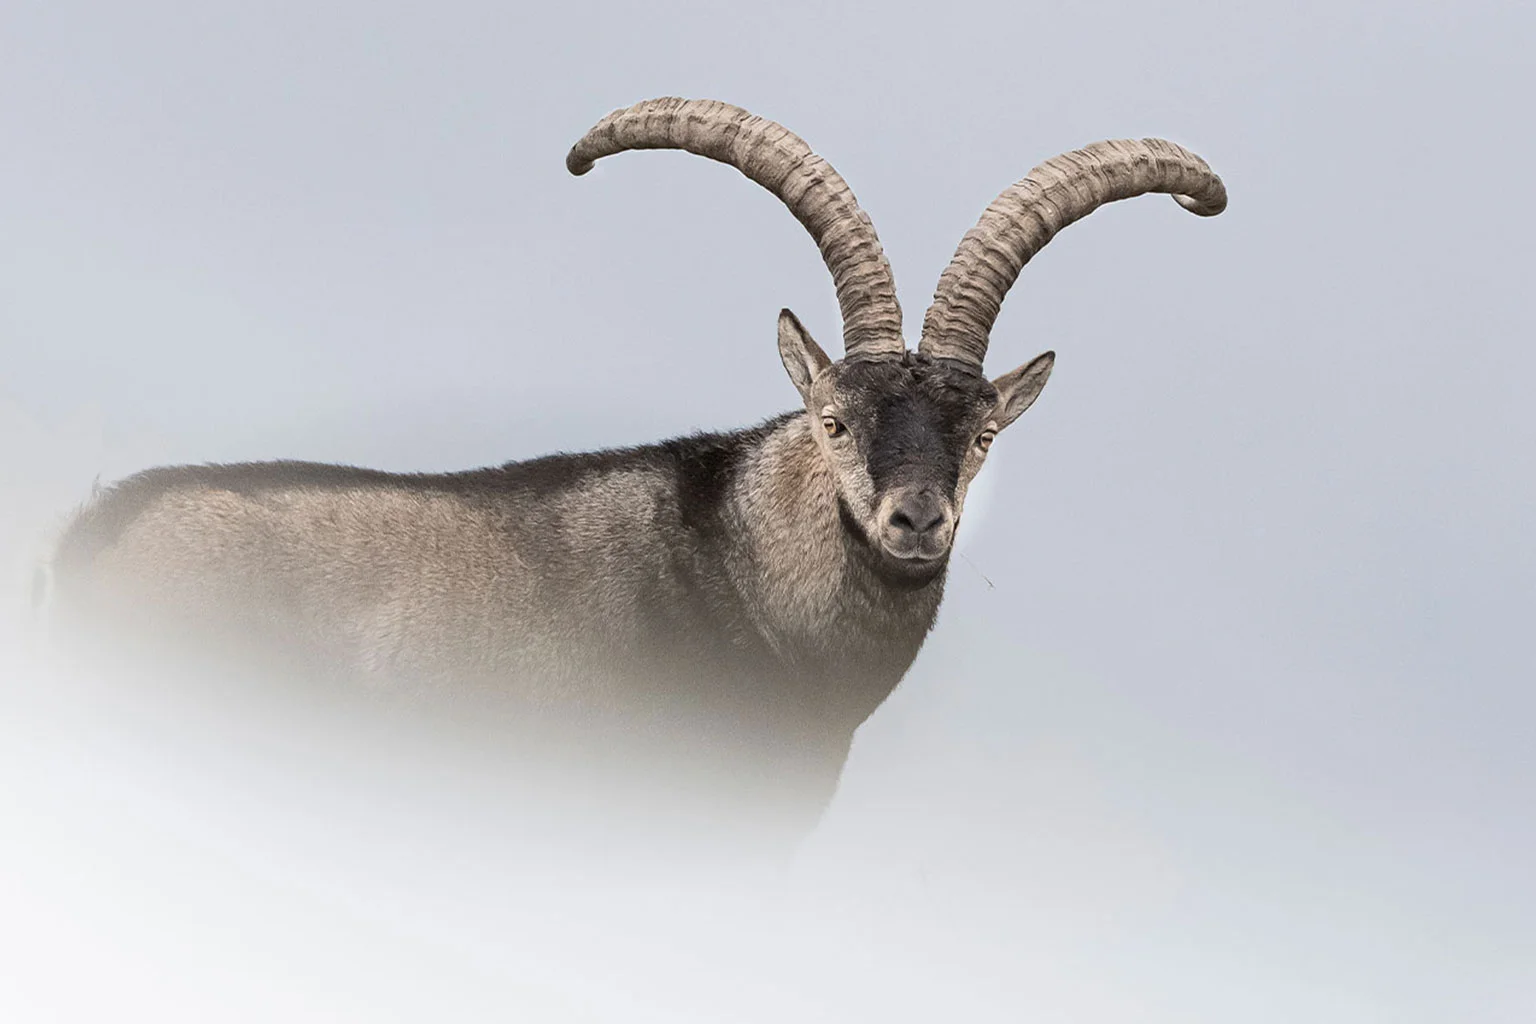 Cabra montés - Fotografía de la cabra montés - Wildmoral